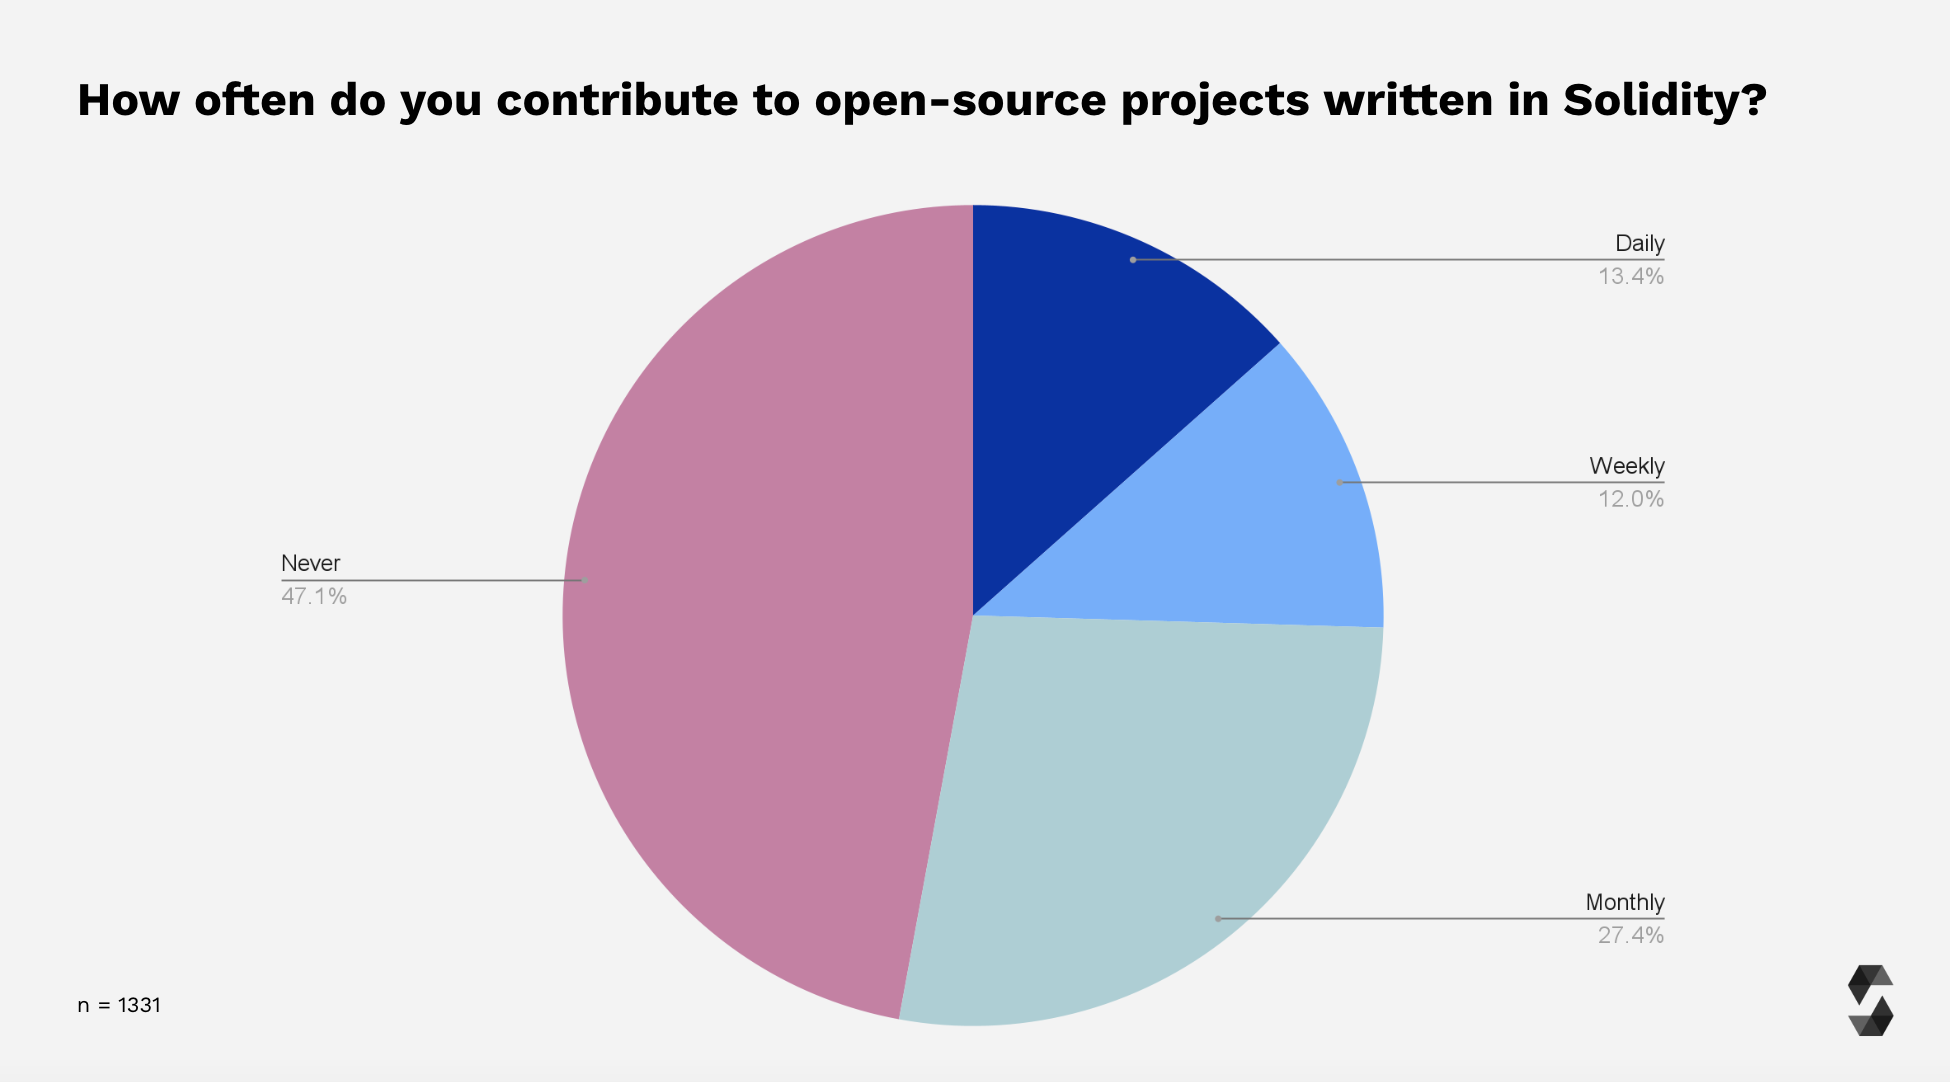 Survey Participants Open Source Contributions